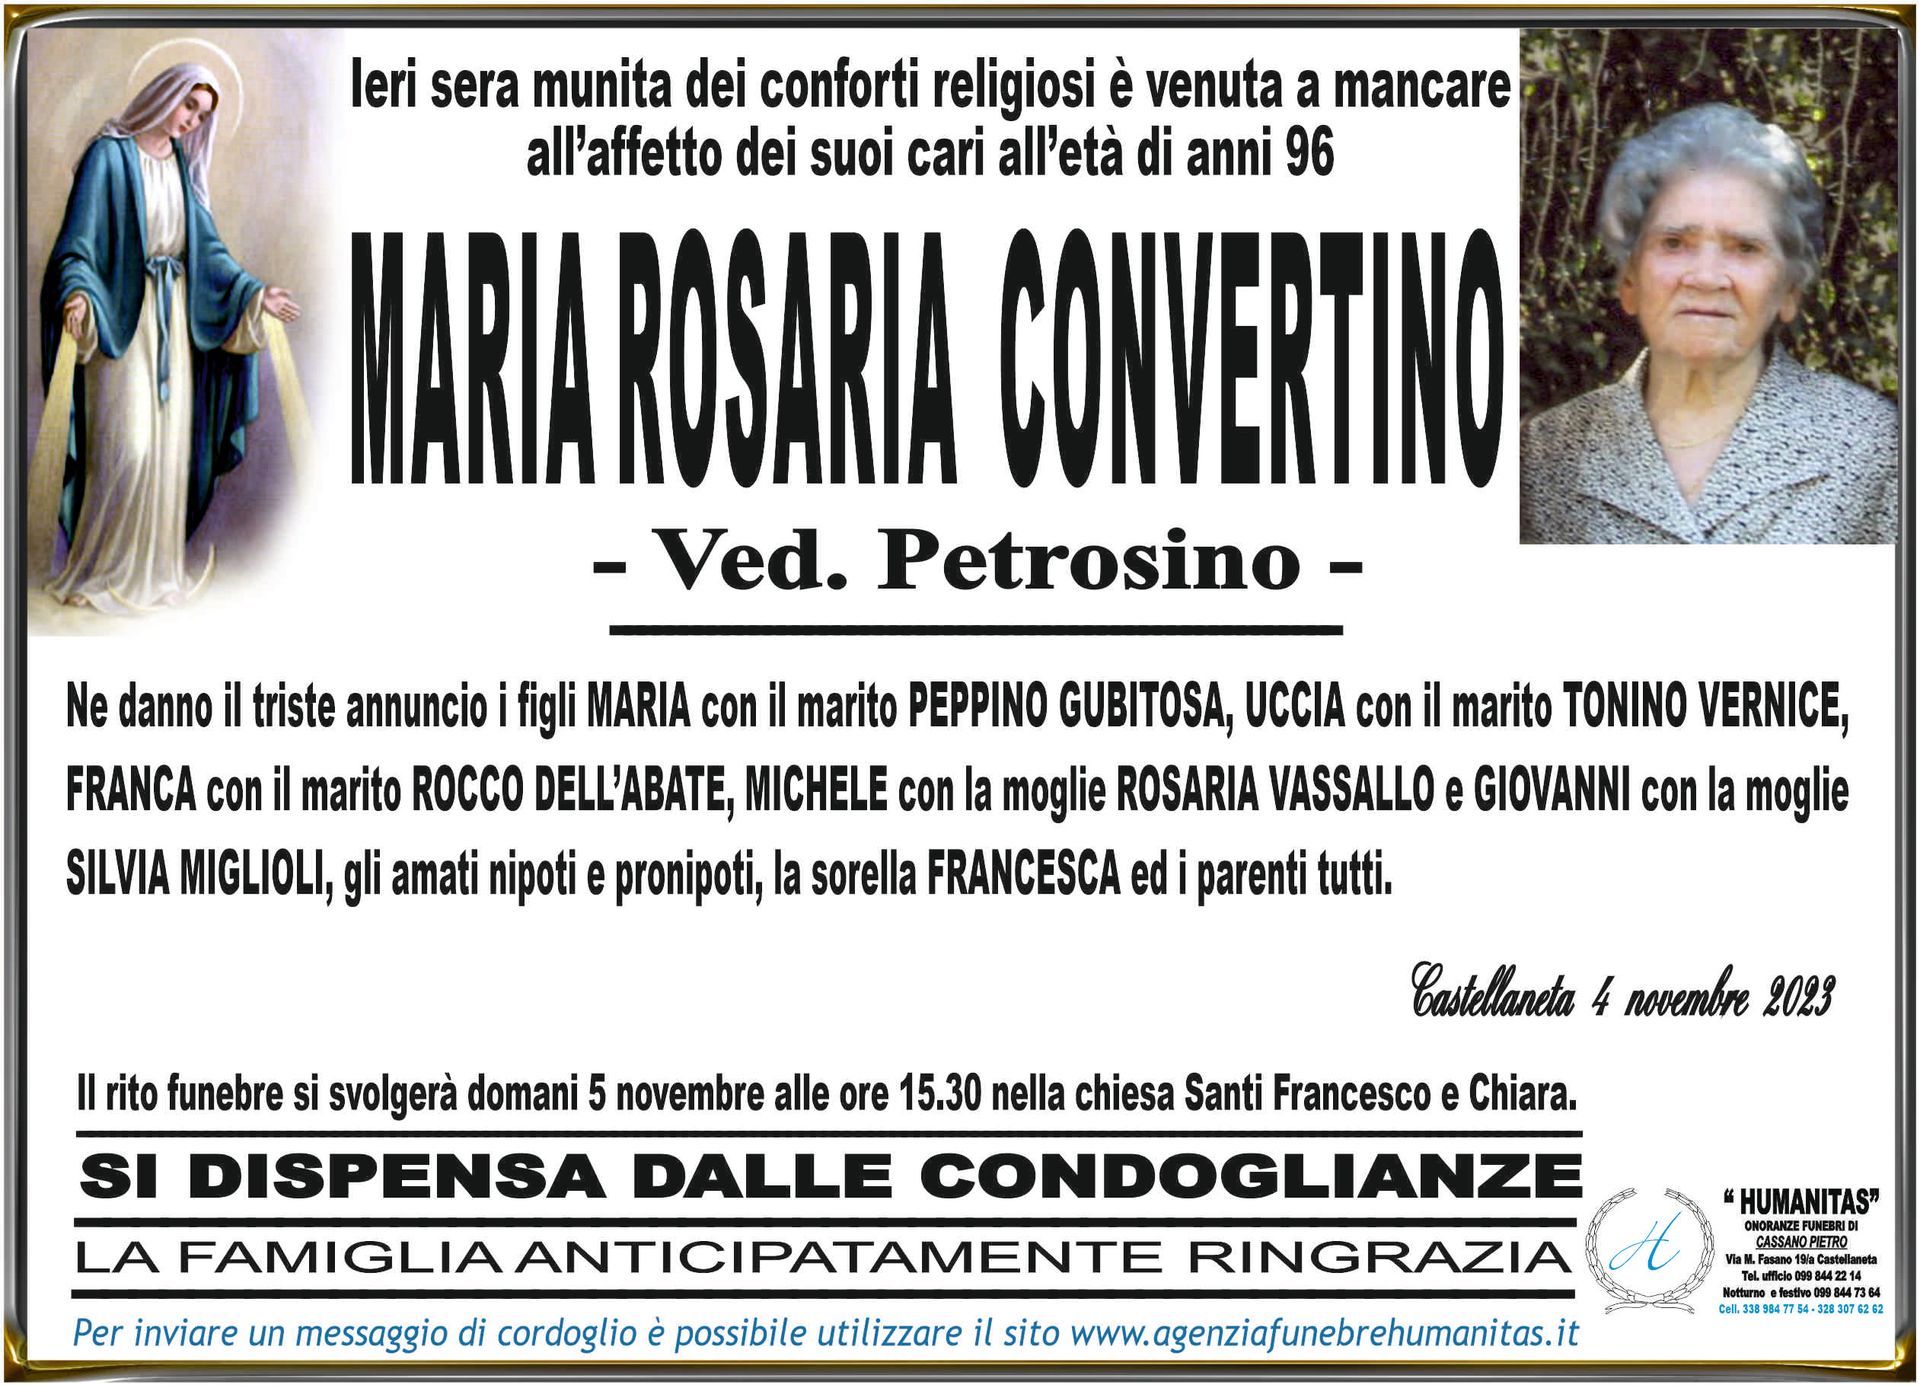 necrologio Maria Rosaria Convertino